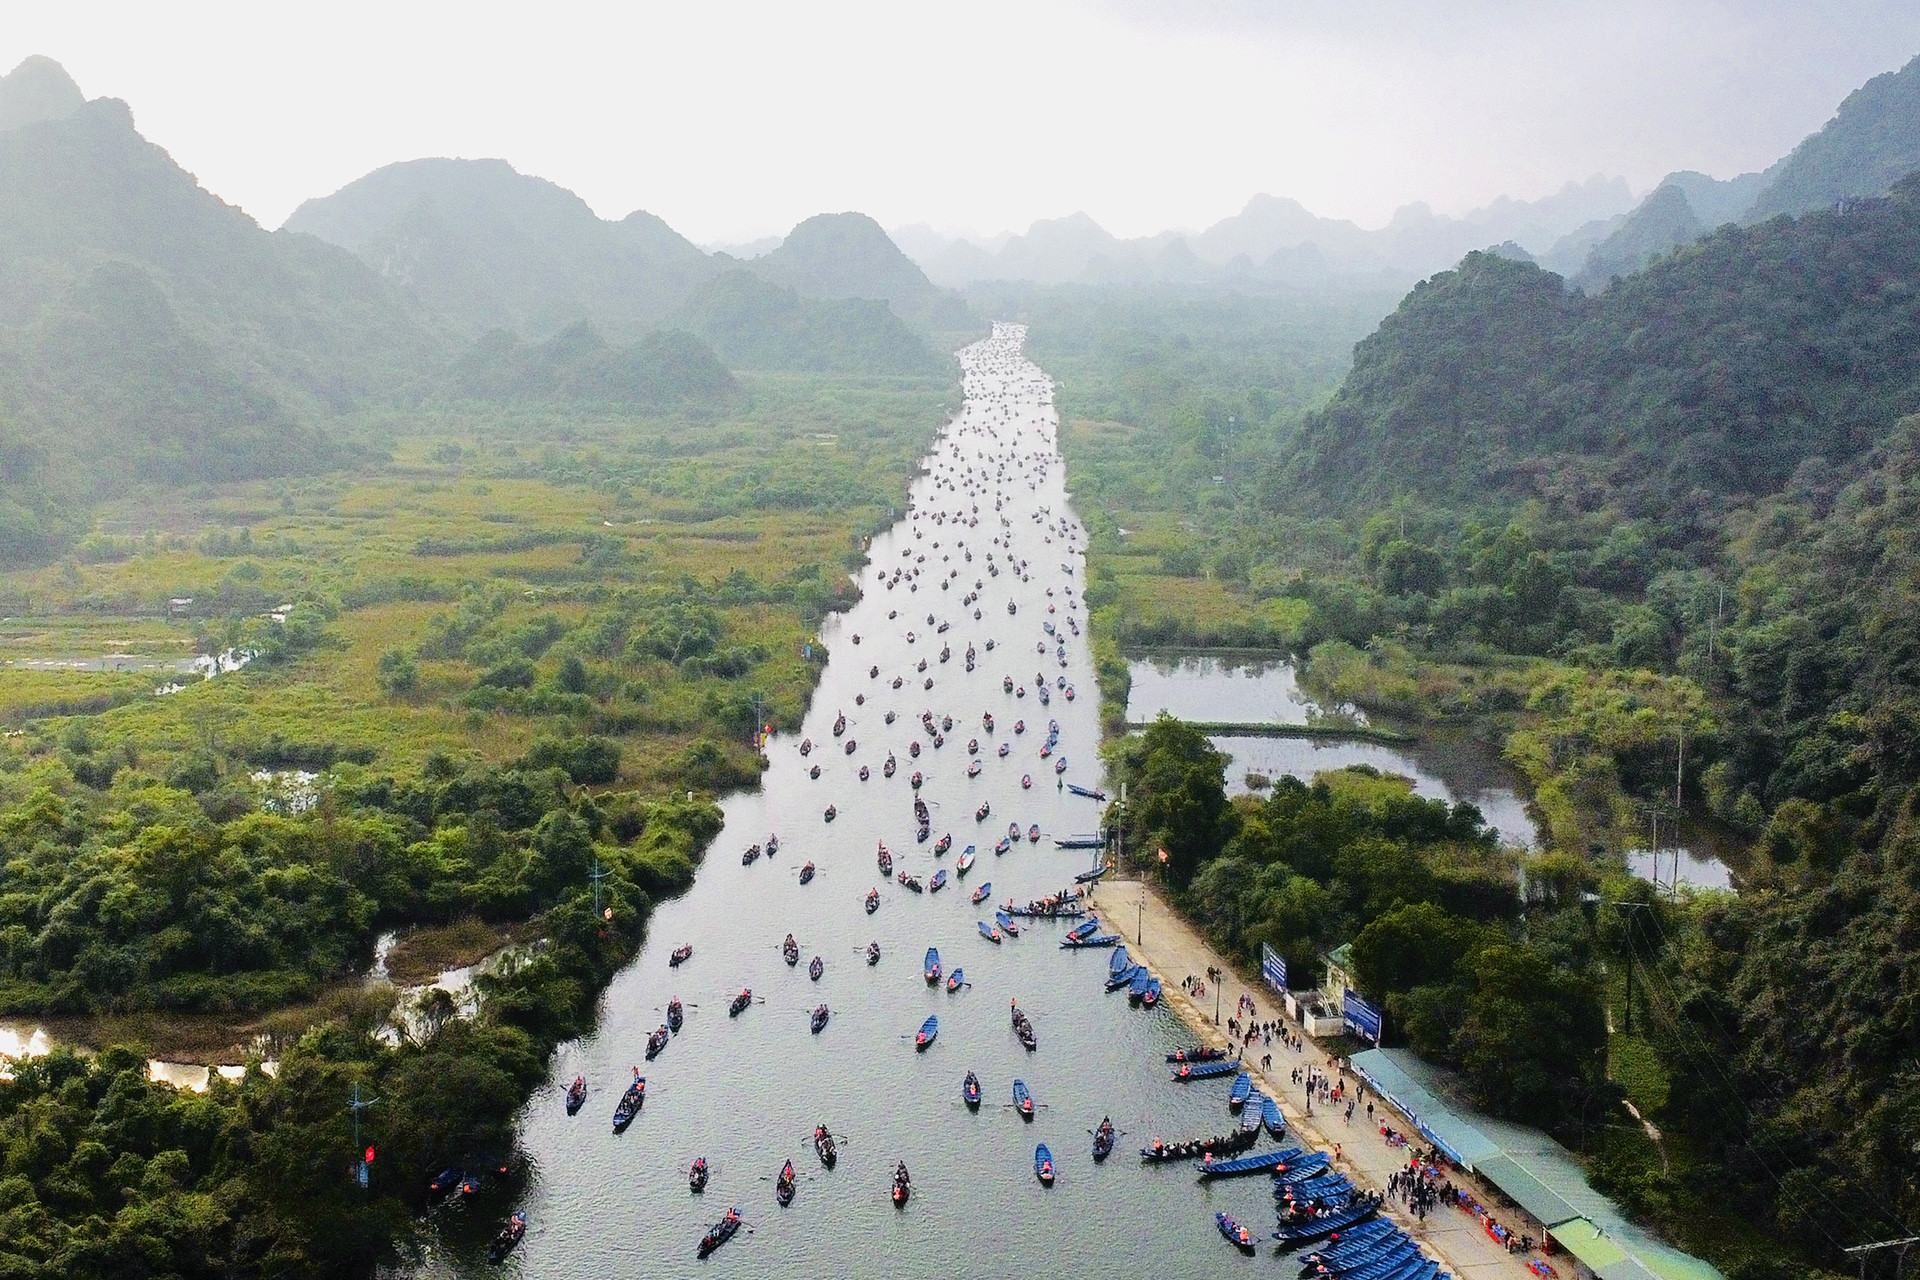 Hàng chục nghìn người cực nhọc chen lấn lên cáp treo chùa Hương-2